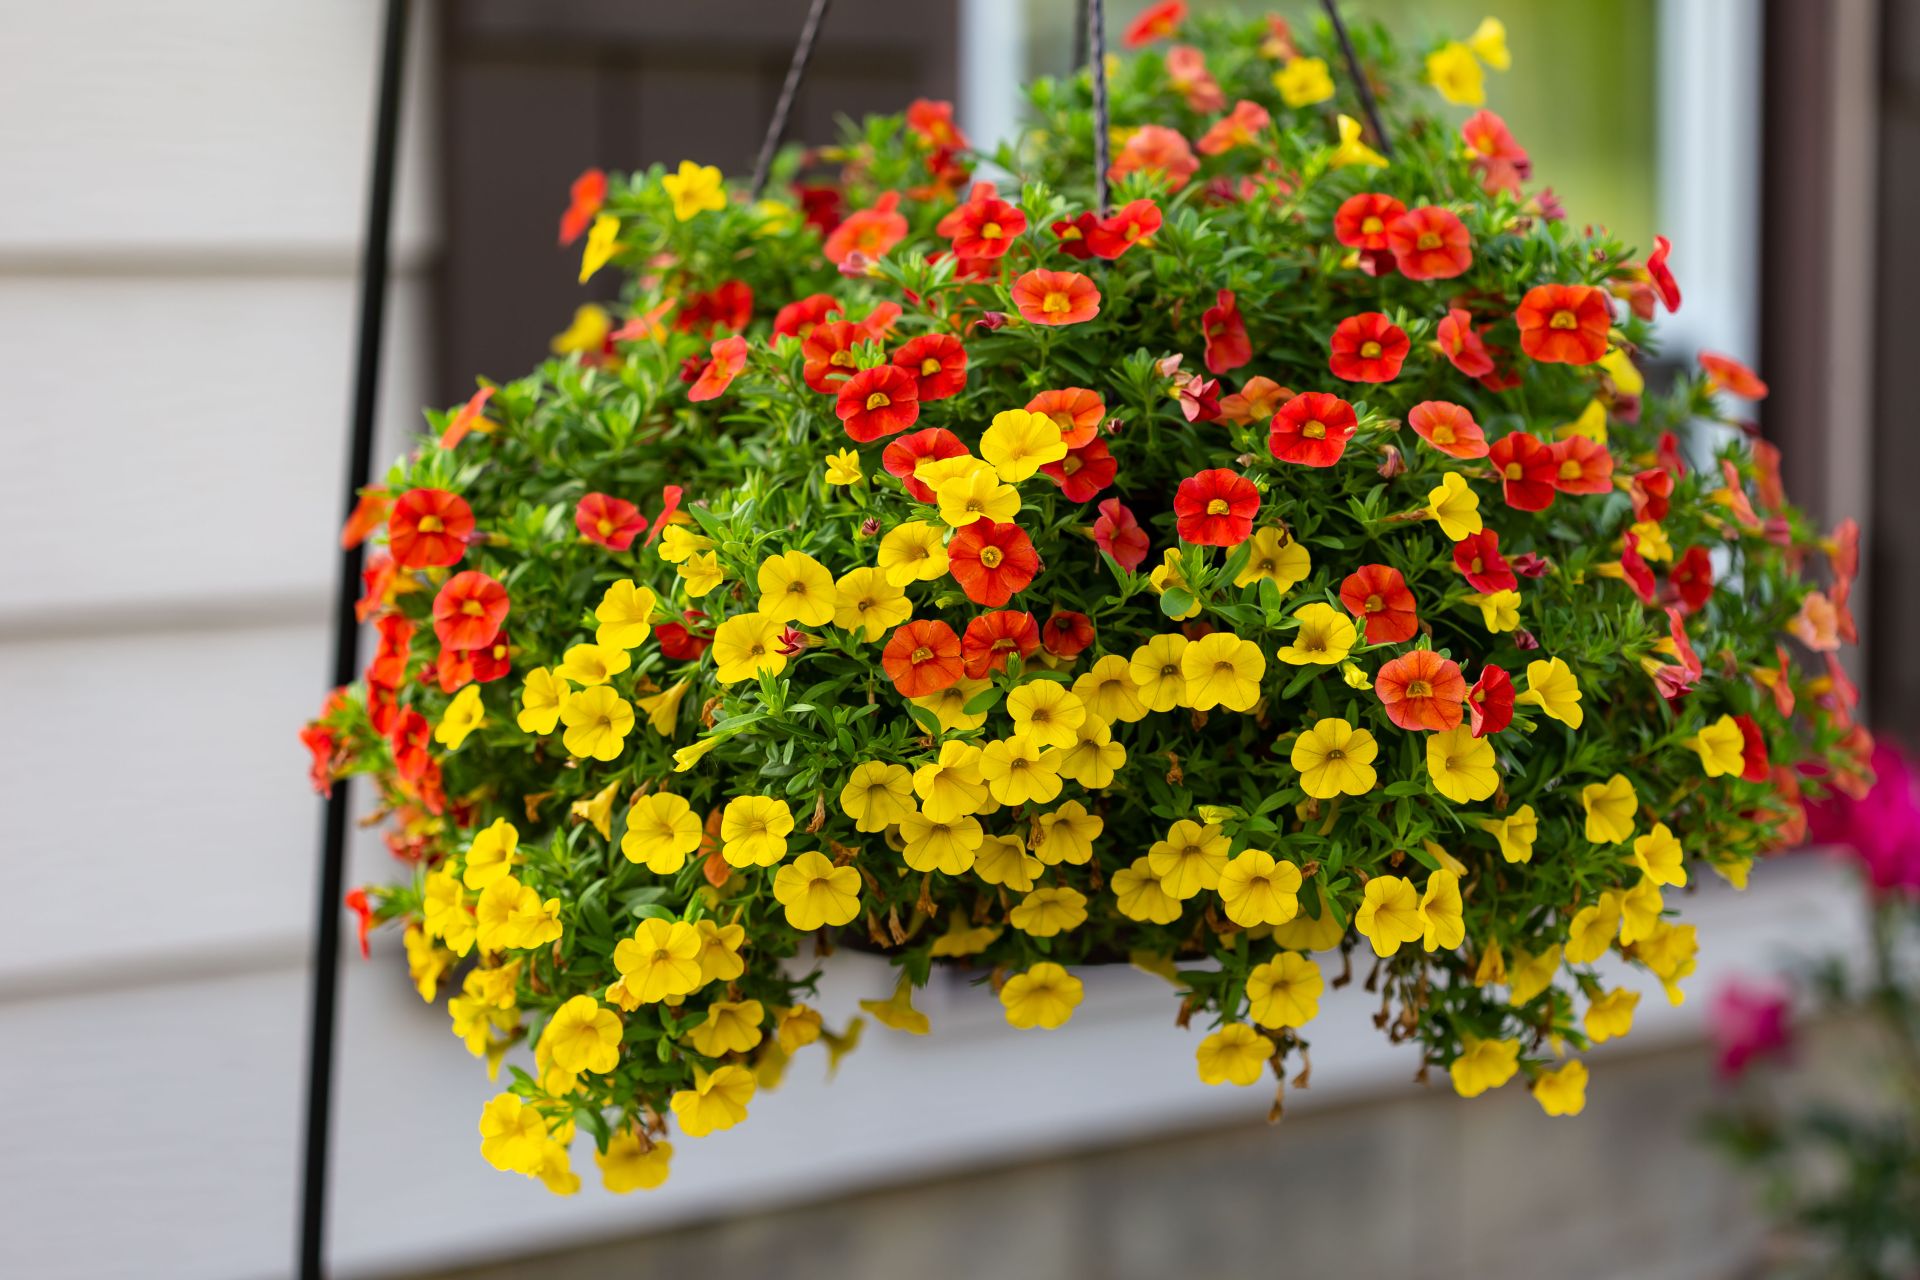 Milion Dzwonków - śliczny kwiat balkonowy. Fot. Shutterstock